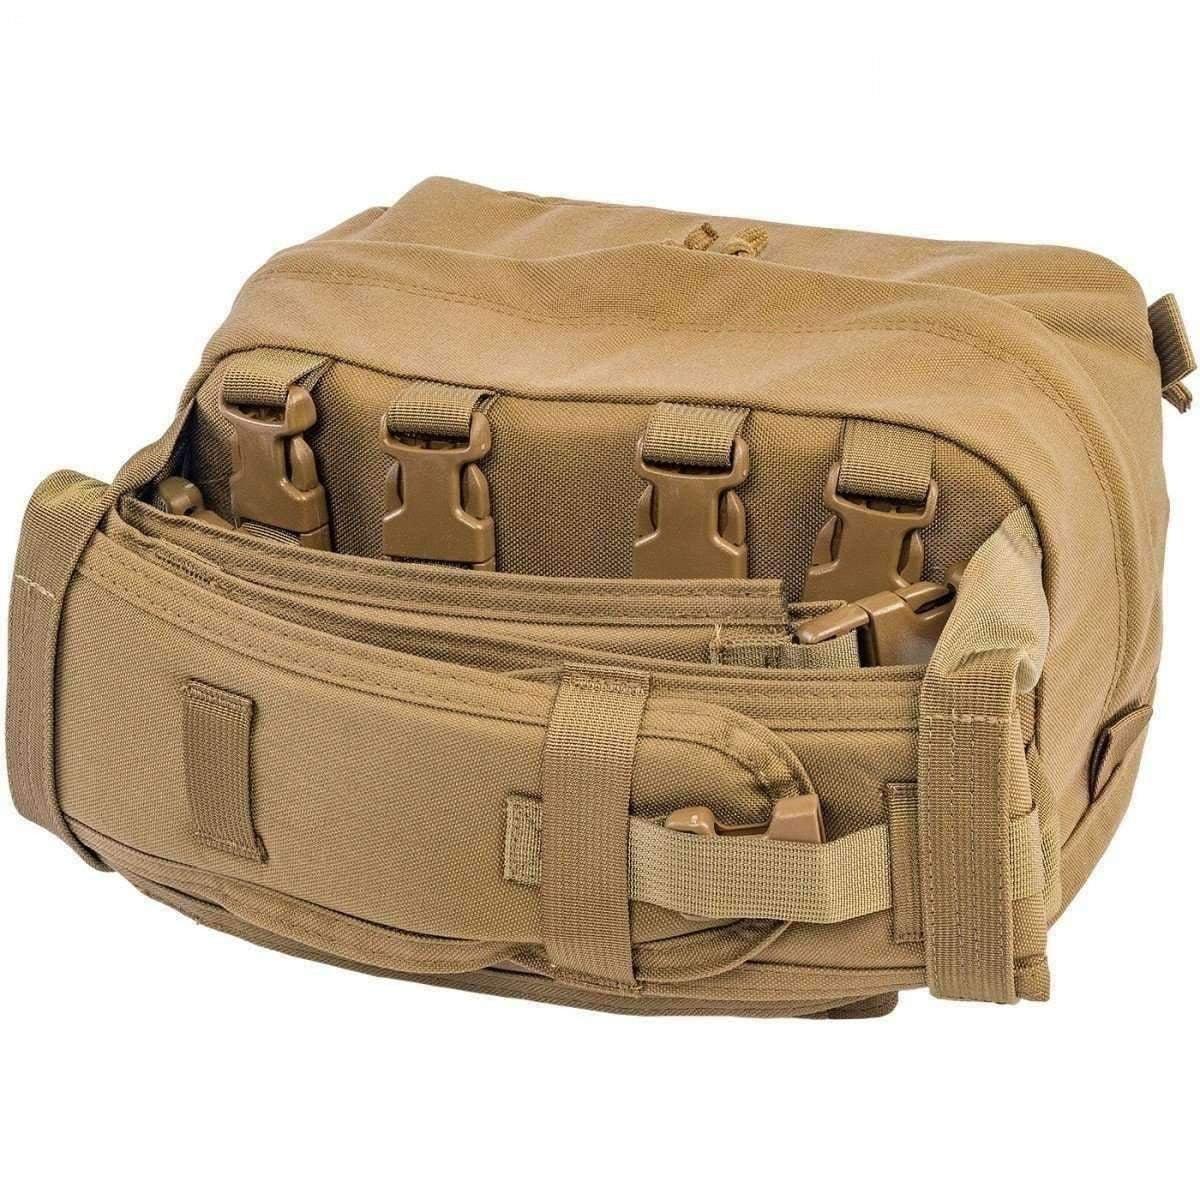 USMC Combat Lifesaver Kit - Vendor